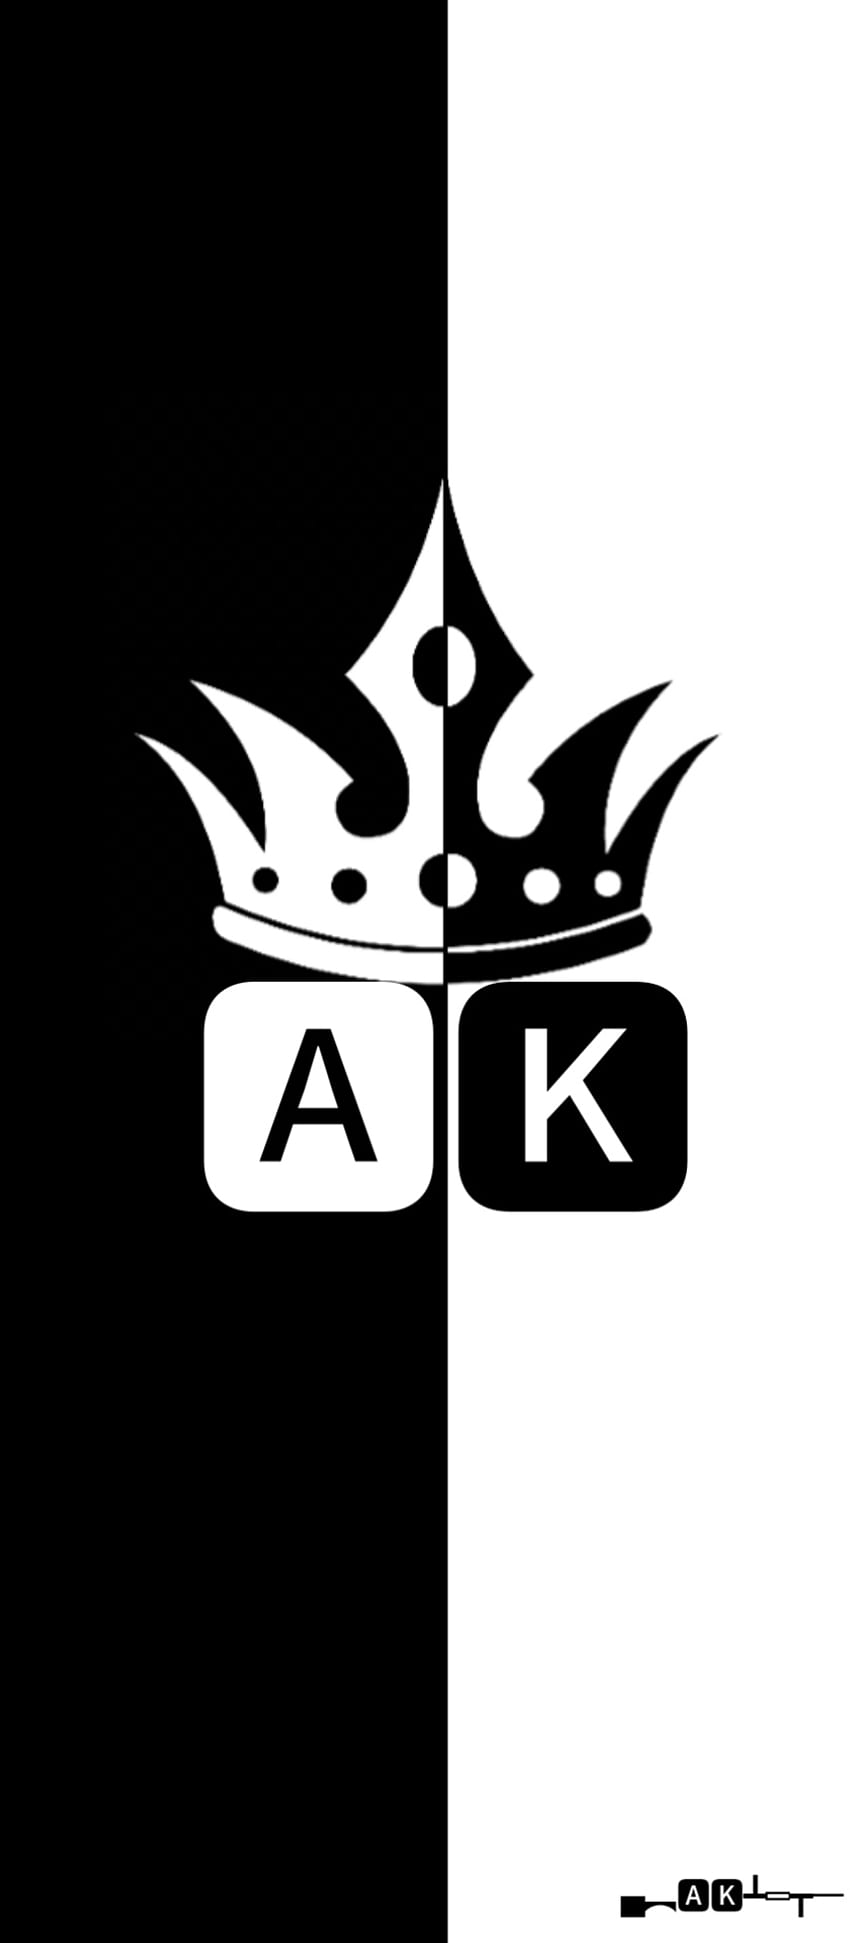 🦄 @_status_king_ak - status_king_ak - TikTok